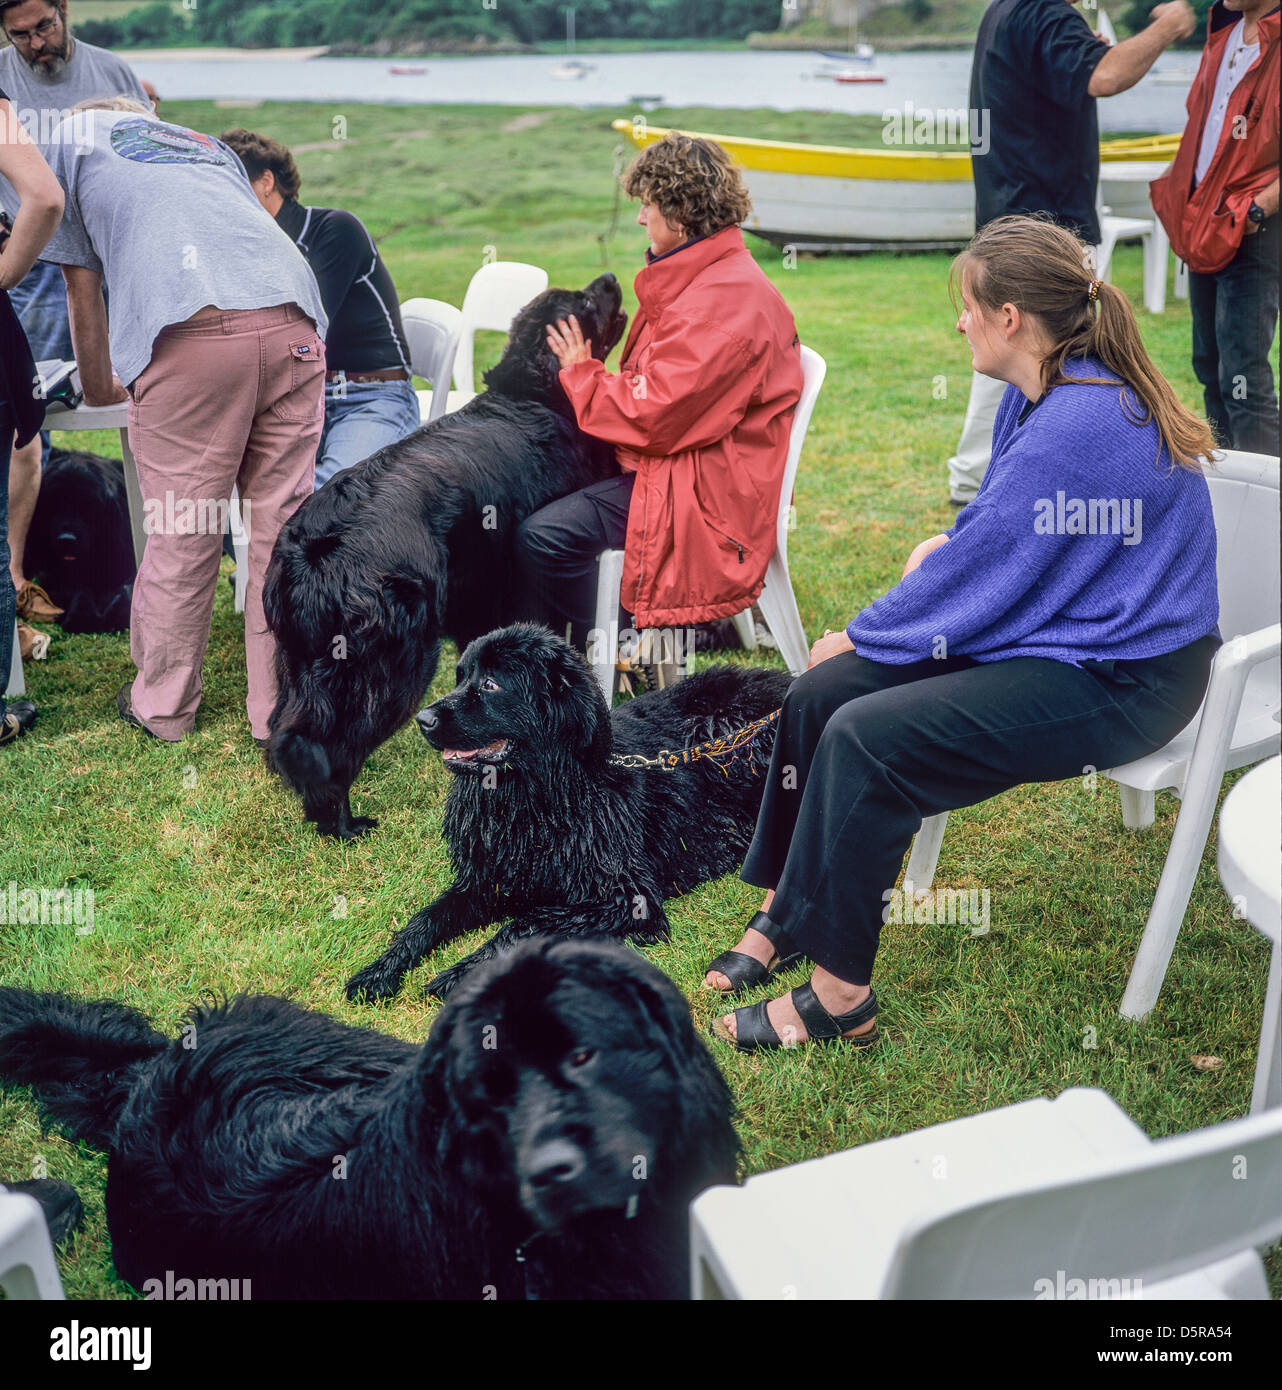 Personnes avec des chiens de secours de Terre-Neuve Bretagne France Europe Banque D'Images